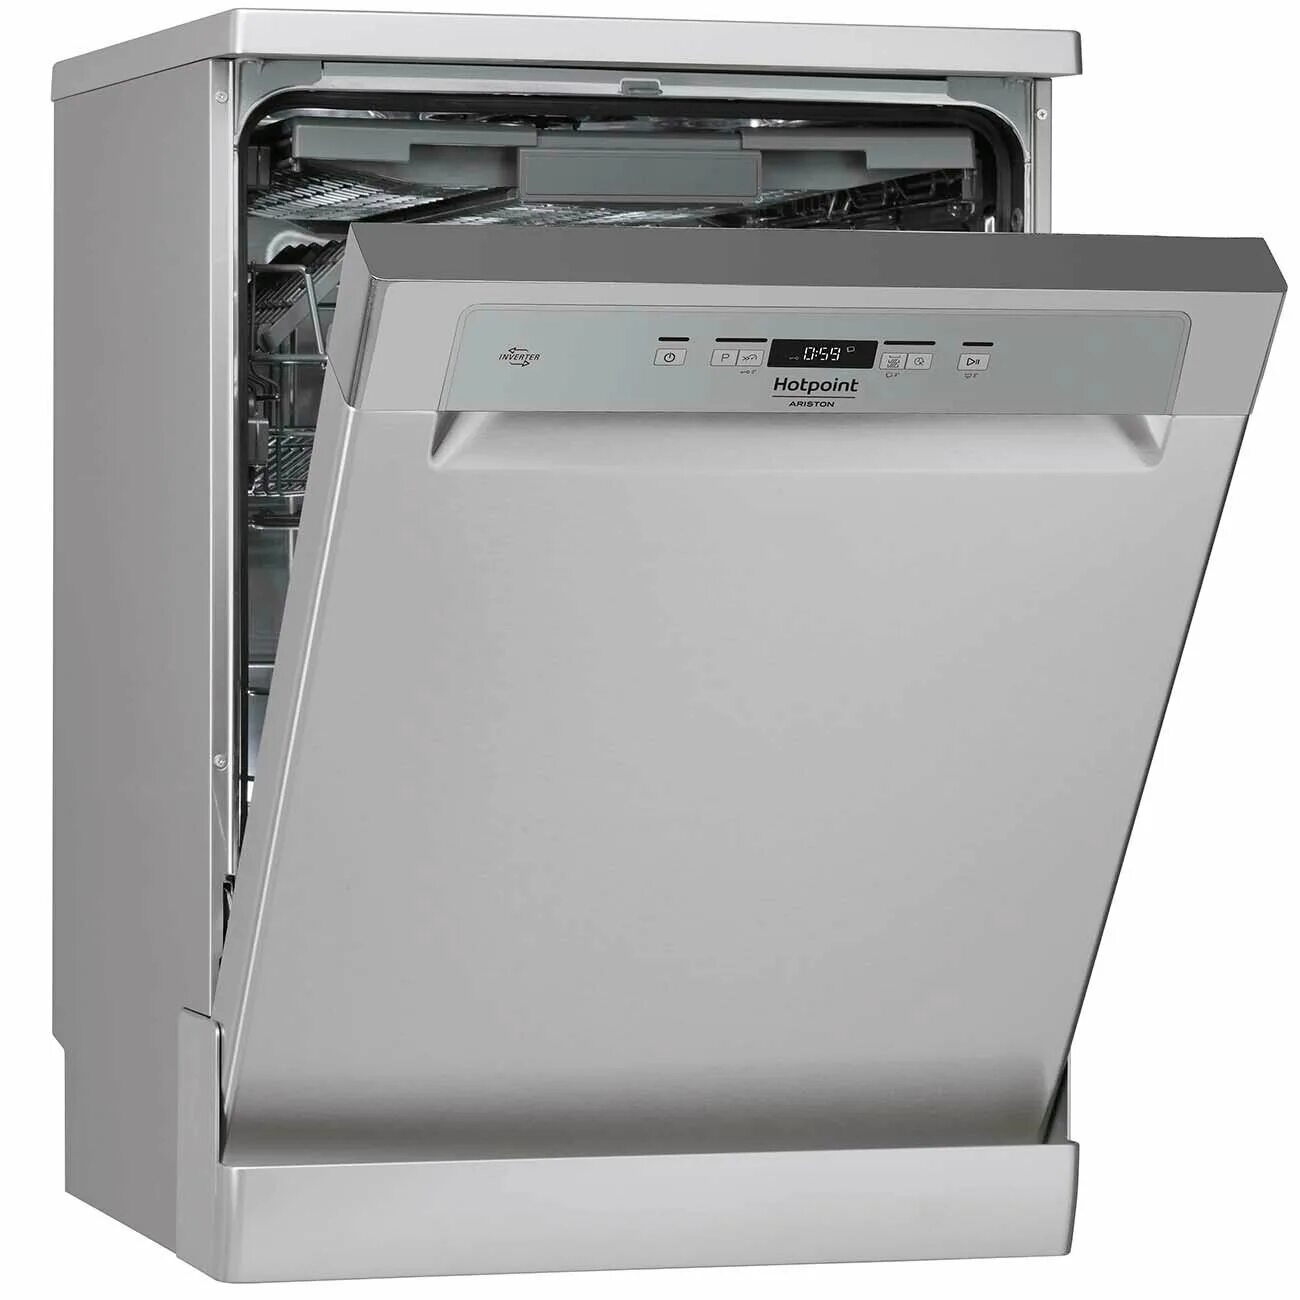 Посудомоечная машина Аристон HFC 3c26 x. Посудомоечная машина Аристон Хотпоинт HFC 3c26 x. Посудомоечная машина (60 см) Hotpoint-Ariston HFC 3c26 f x. Посудомоечная машина Hotpoint-Ariston HFC 3c26 f, белый. Ariston 8357